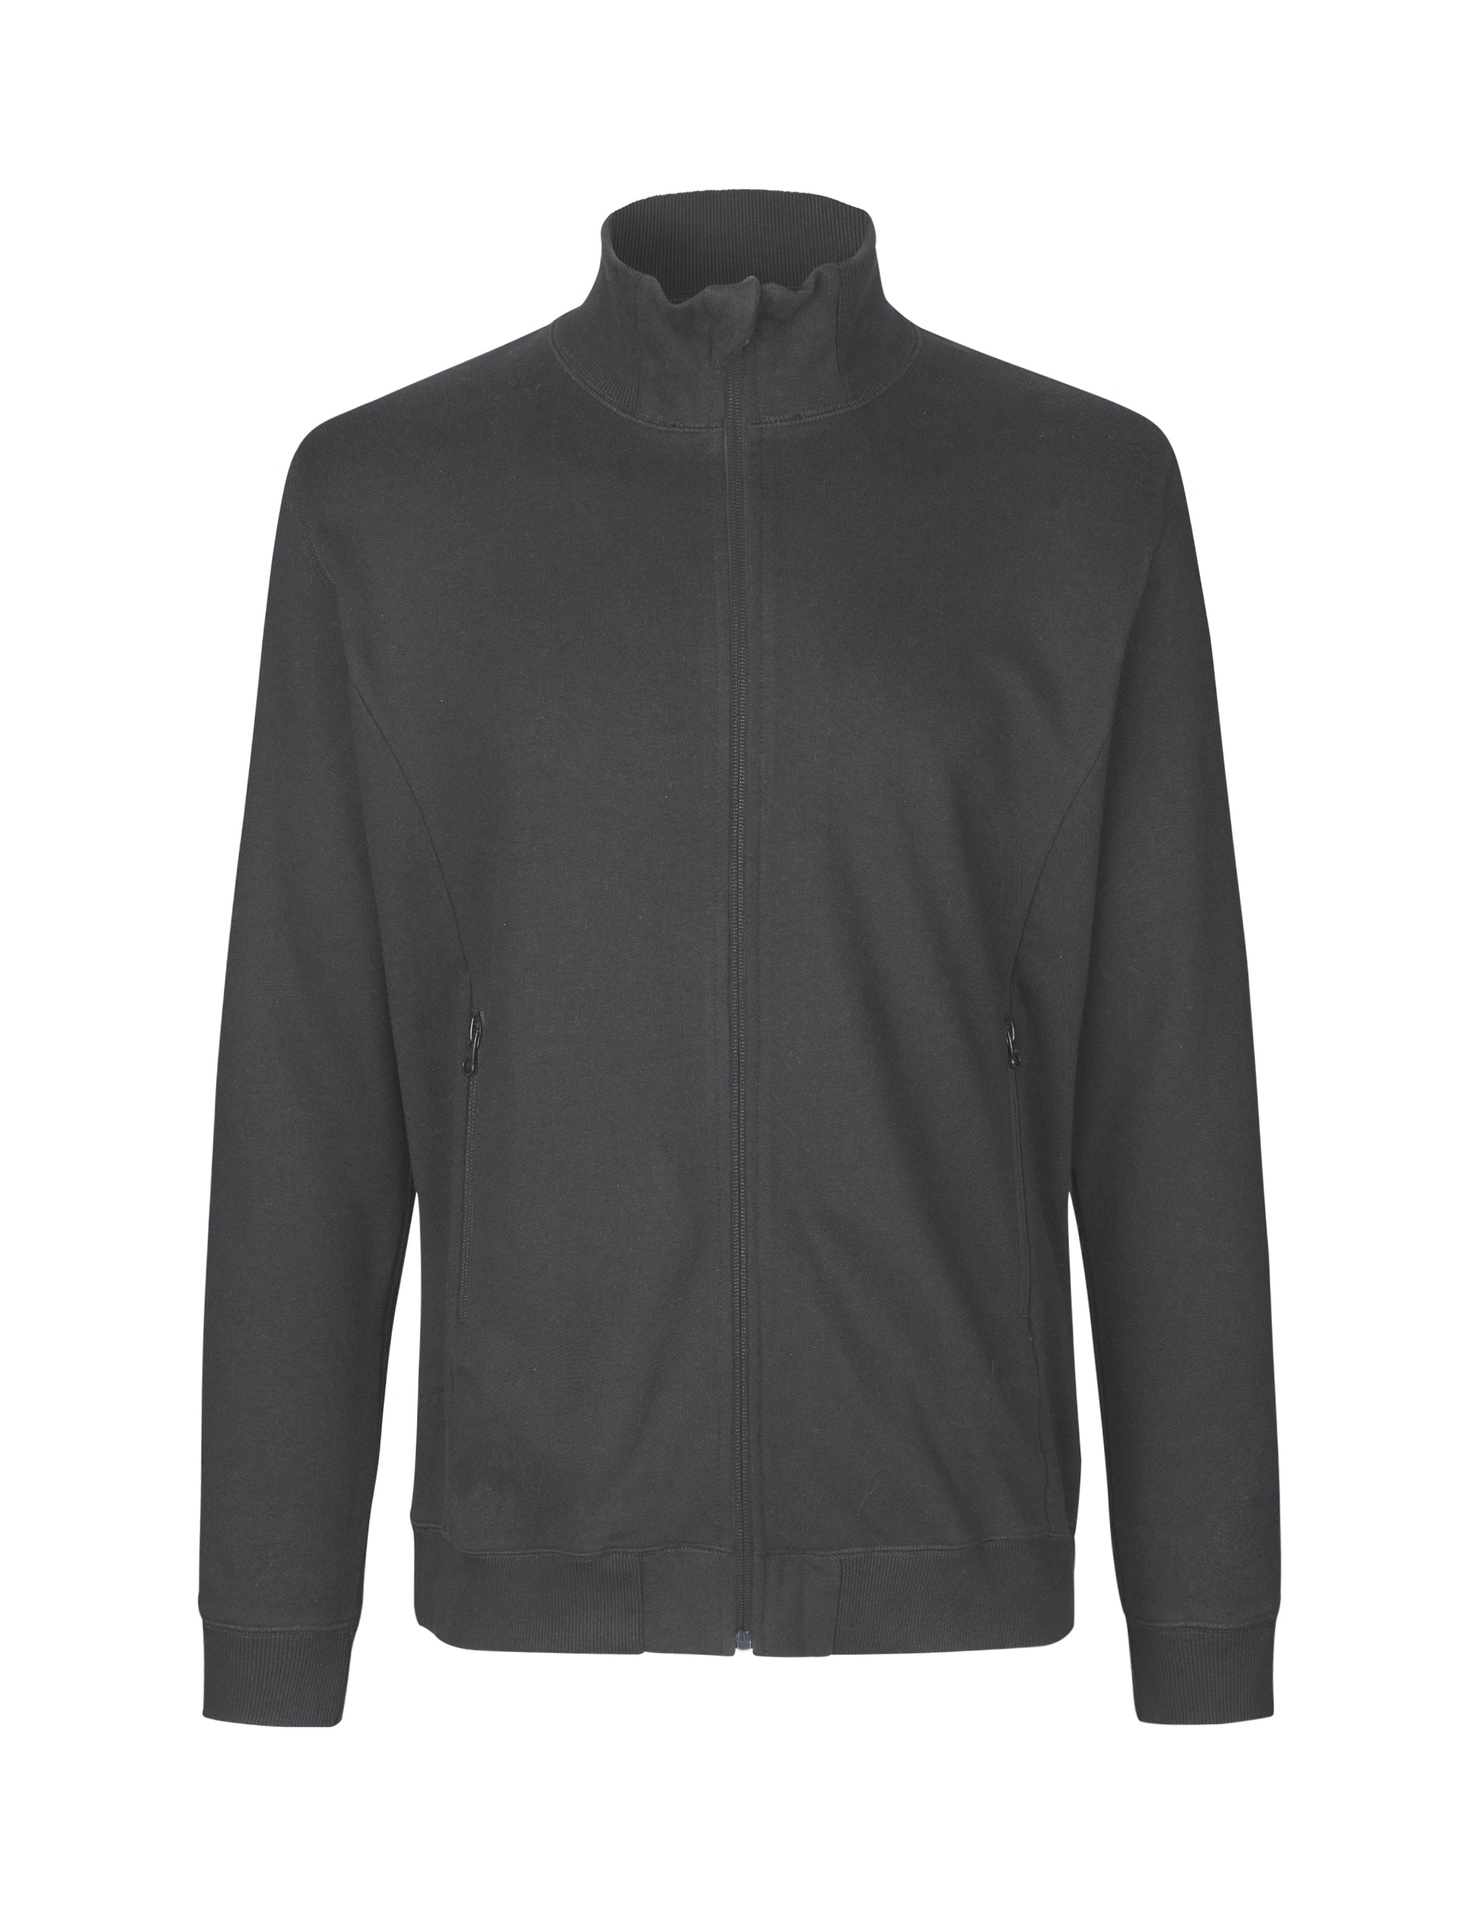 [PR/03647] Unisex High Neck Jacket (Charcoal 06, XL)